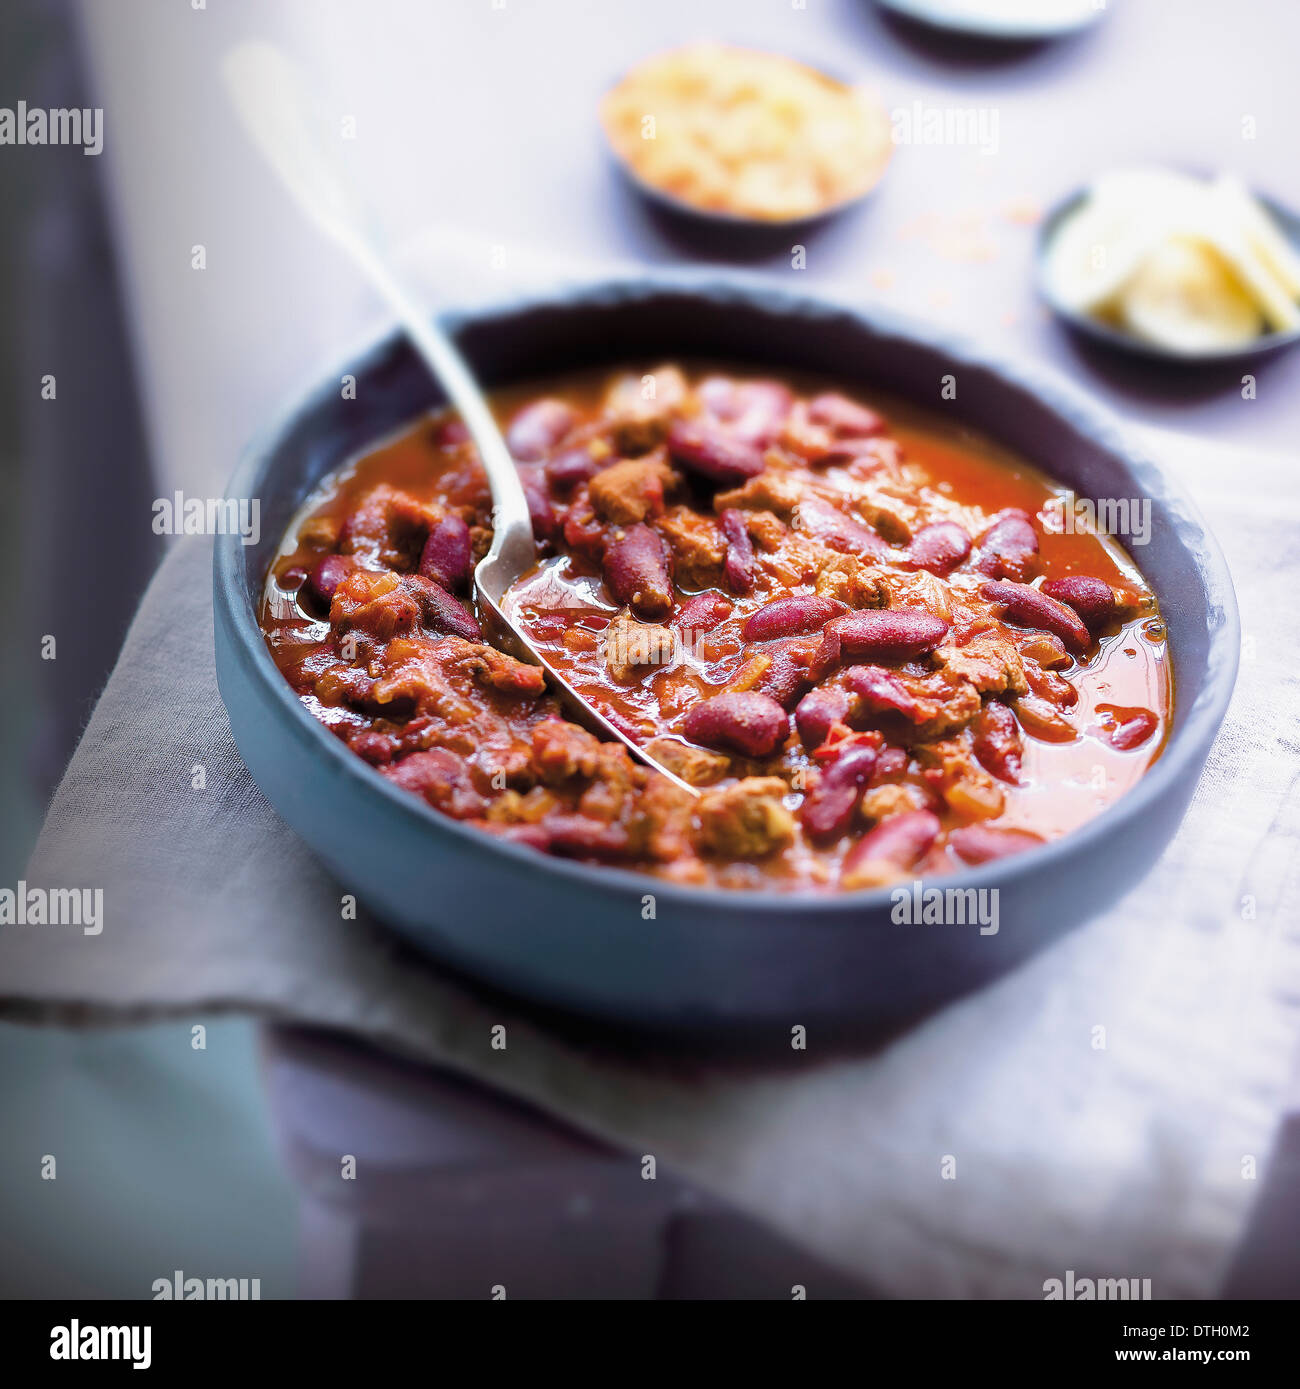 Chili con carne Stock Photo